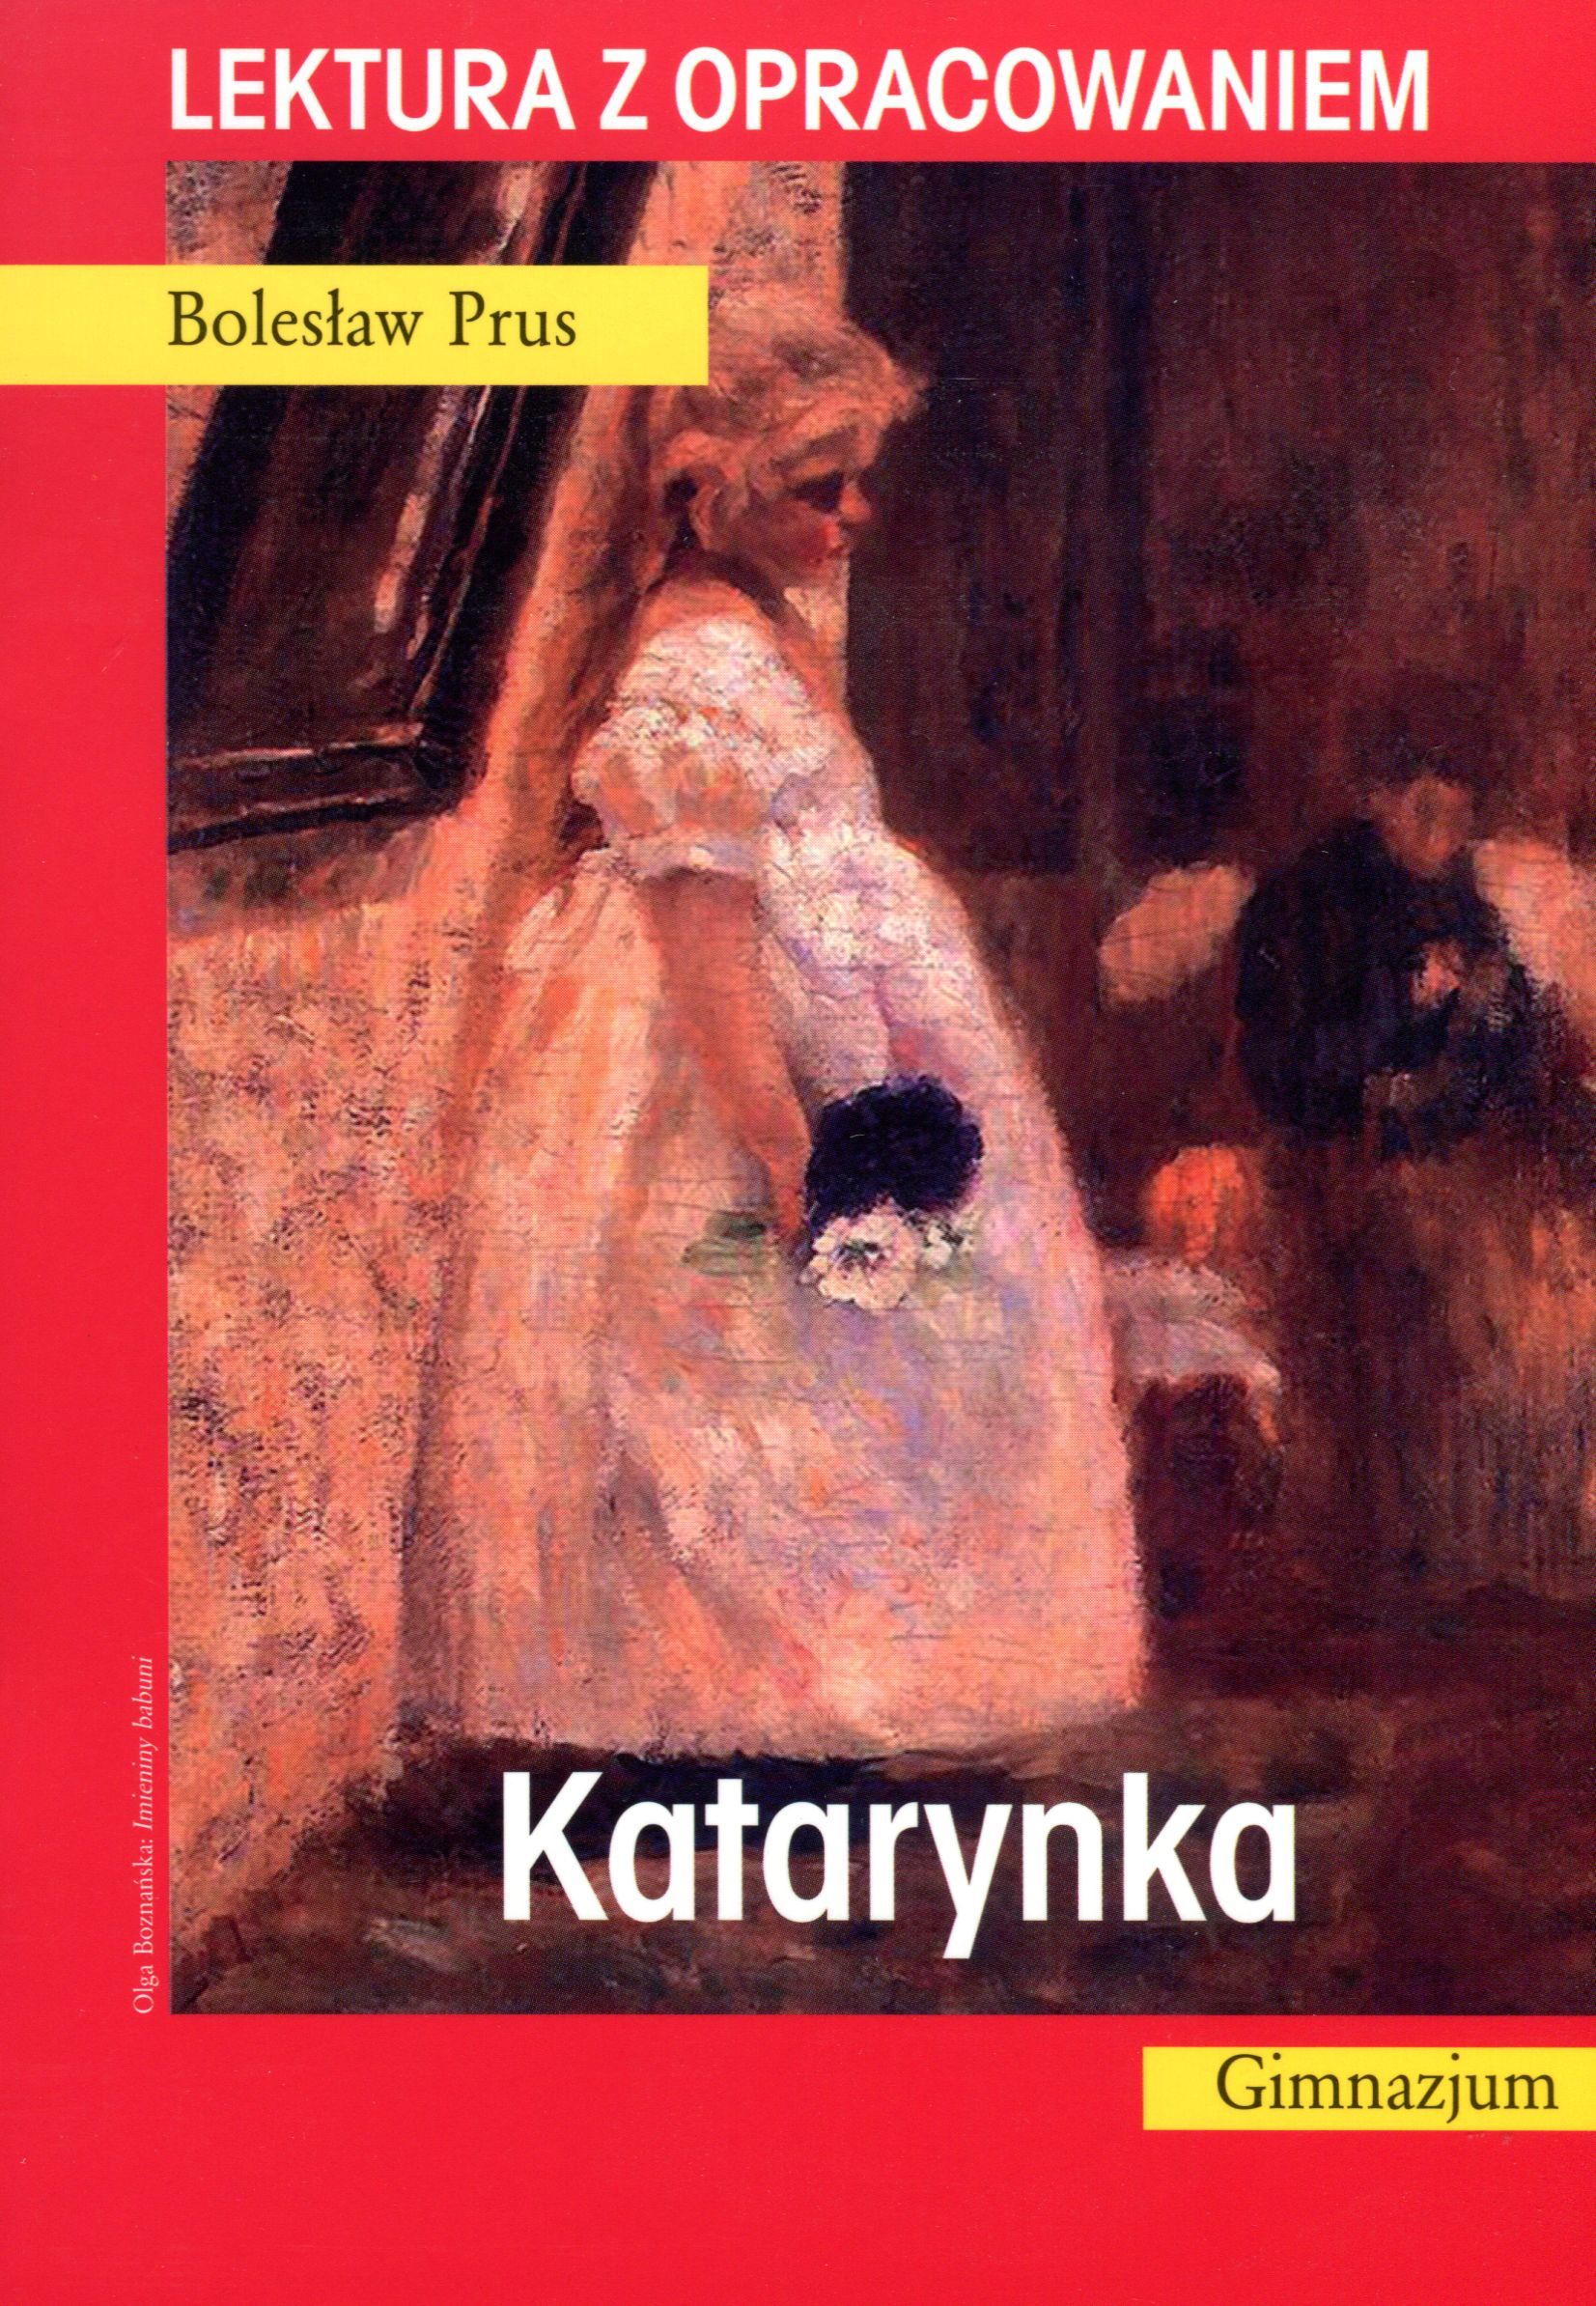 10 Pytań Do Lektury Katarynka Katarynka. Lektura z opracowaniem (Bolesław Prus) książka w księgarni